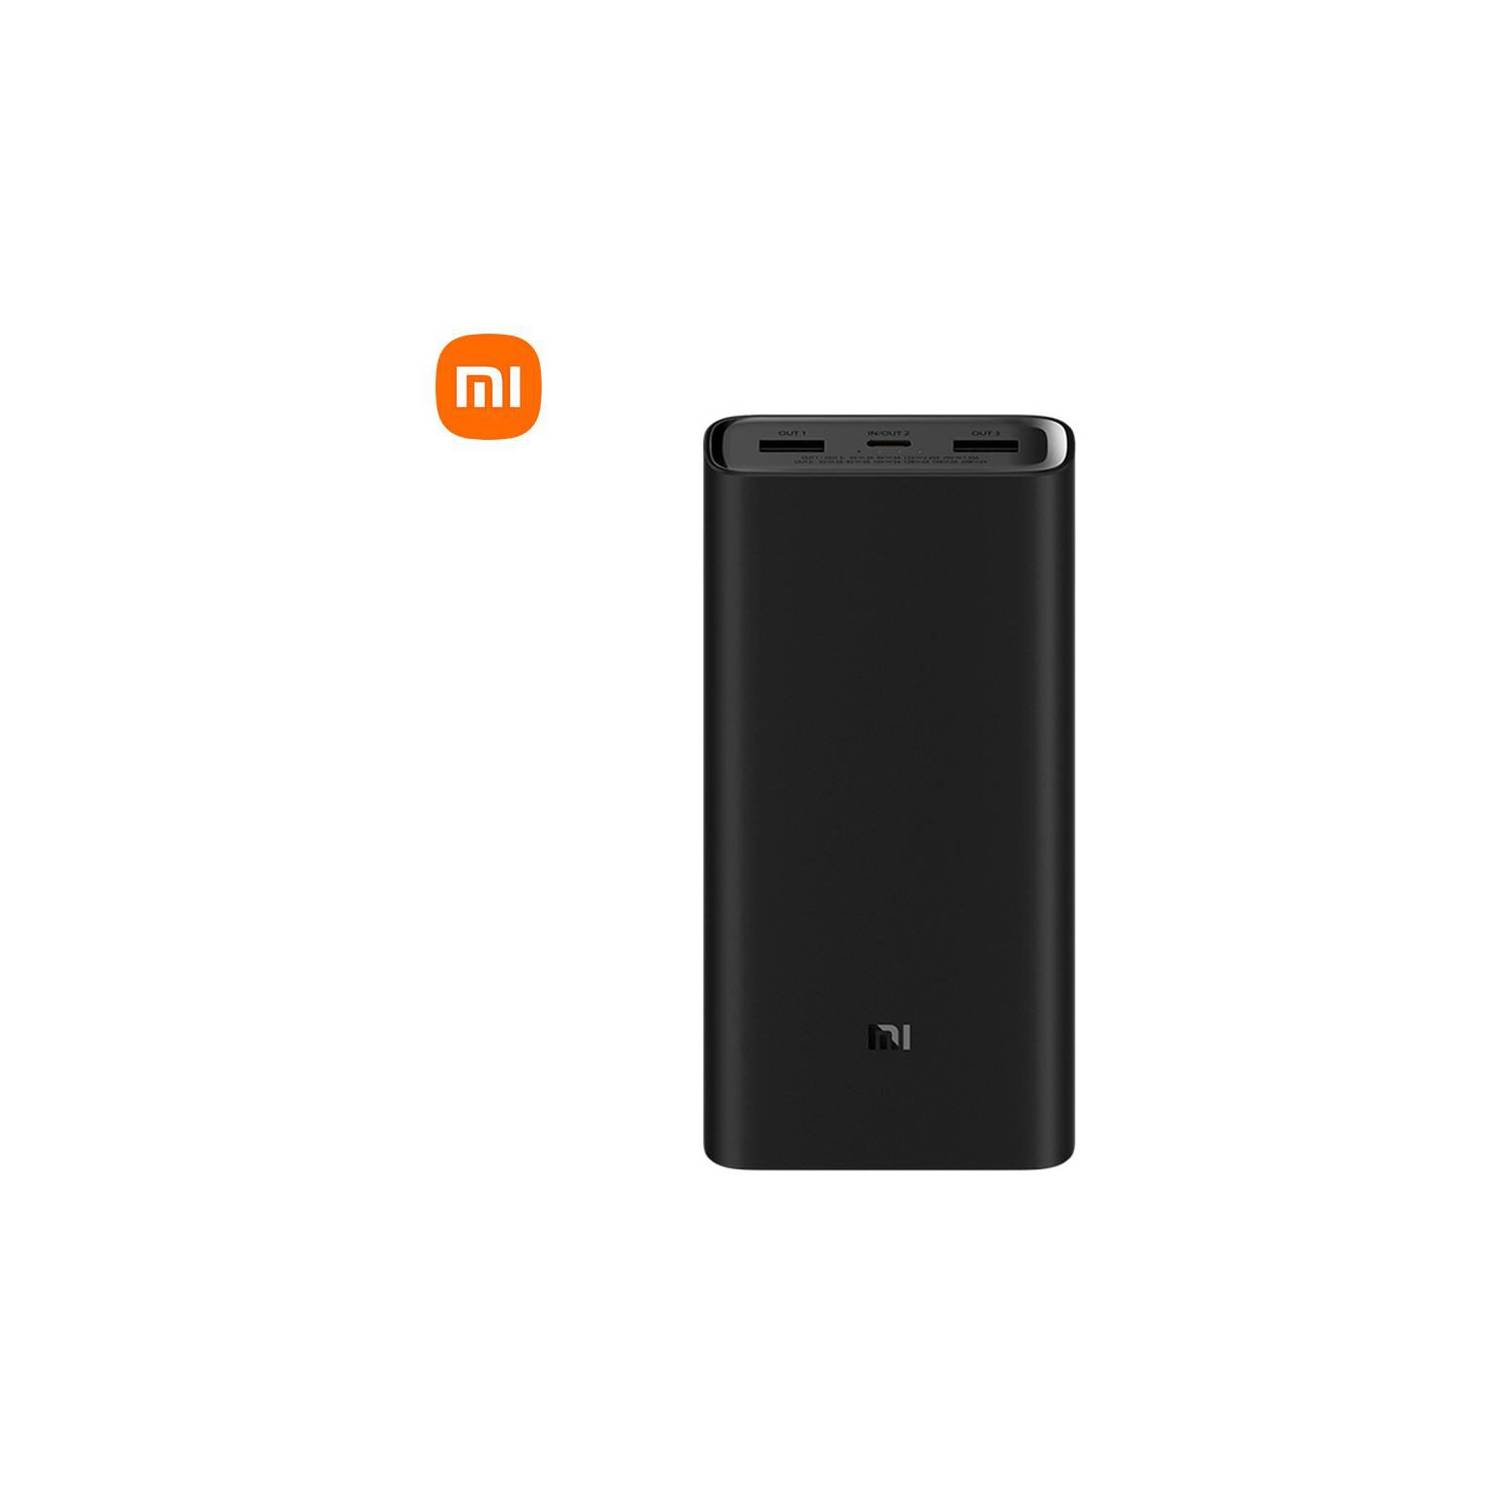 Xiaomi tiene una nueva batería portátil: un monstruo de 20,000 mAh y carga  rápida de 50W por menos de 1,000 pesos